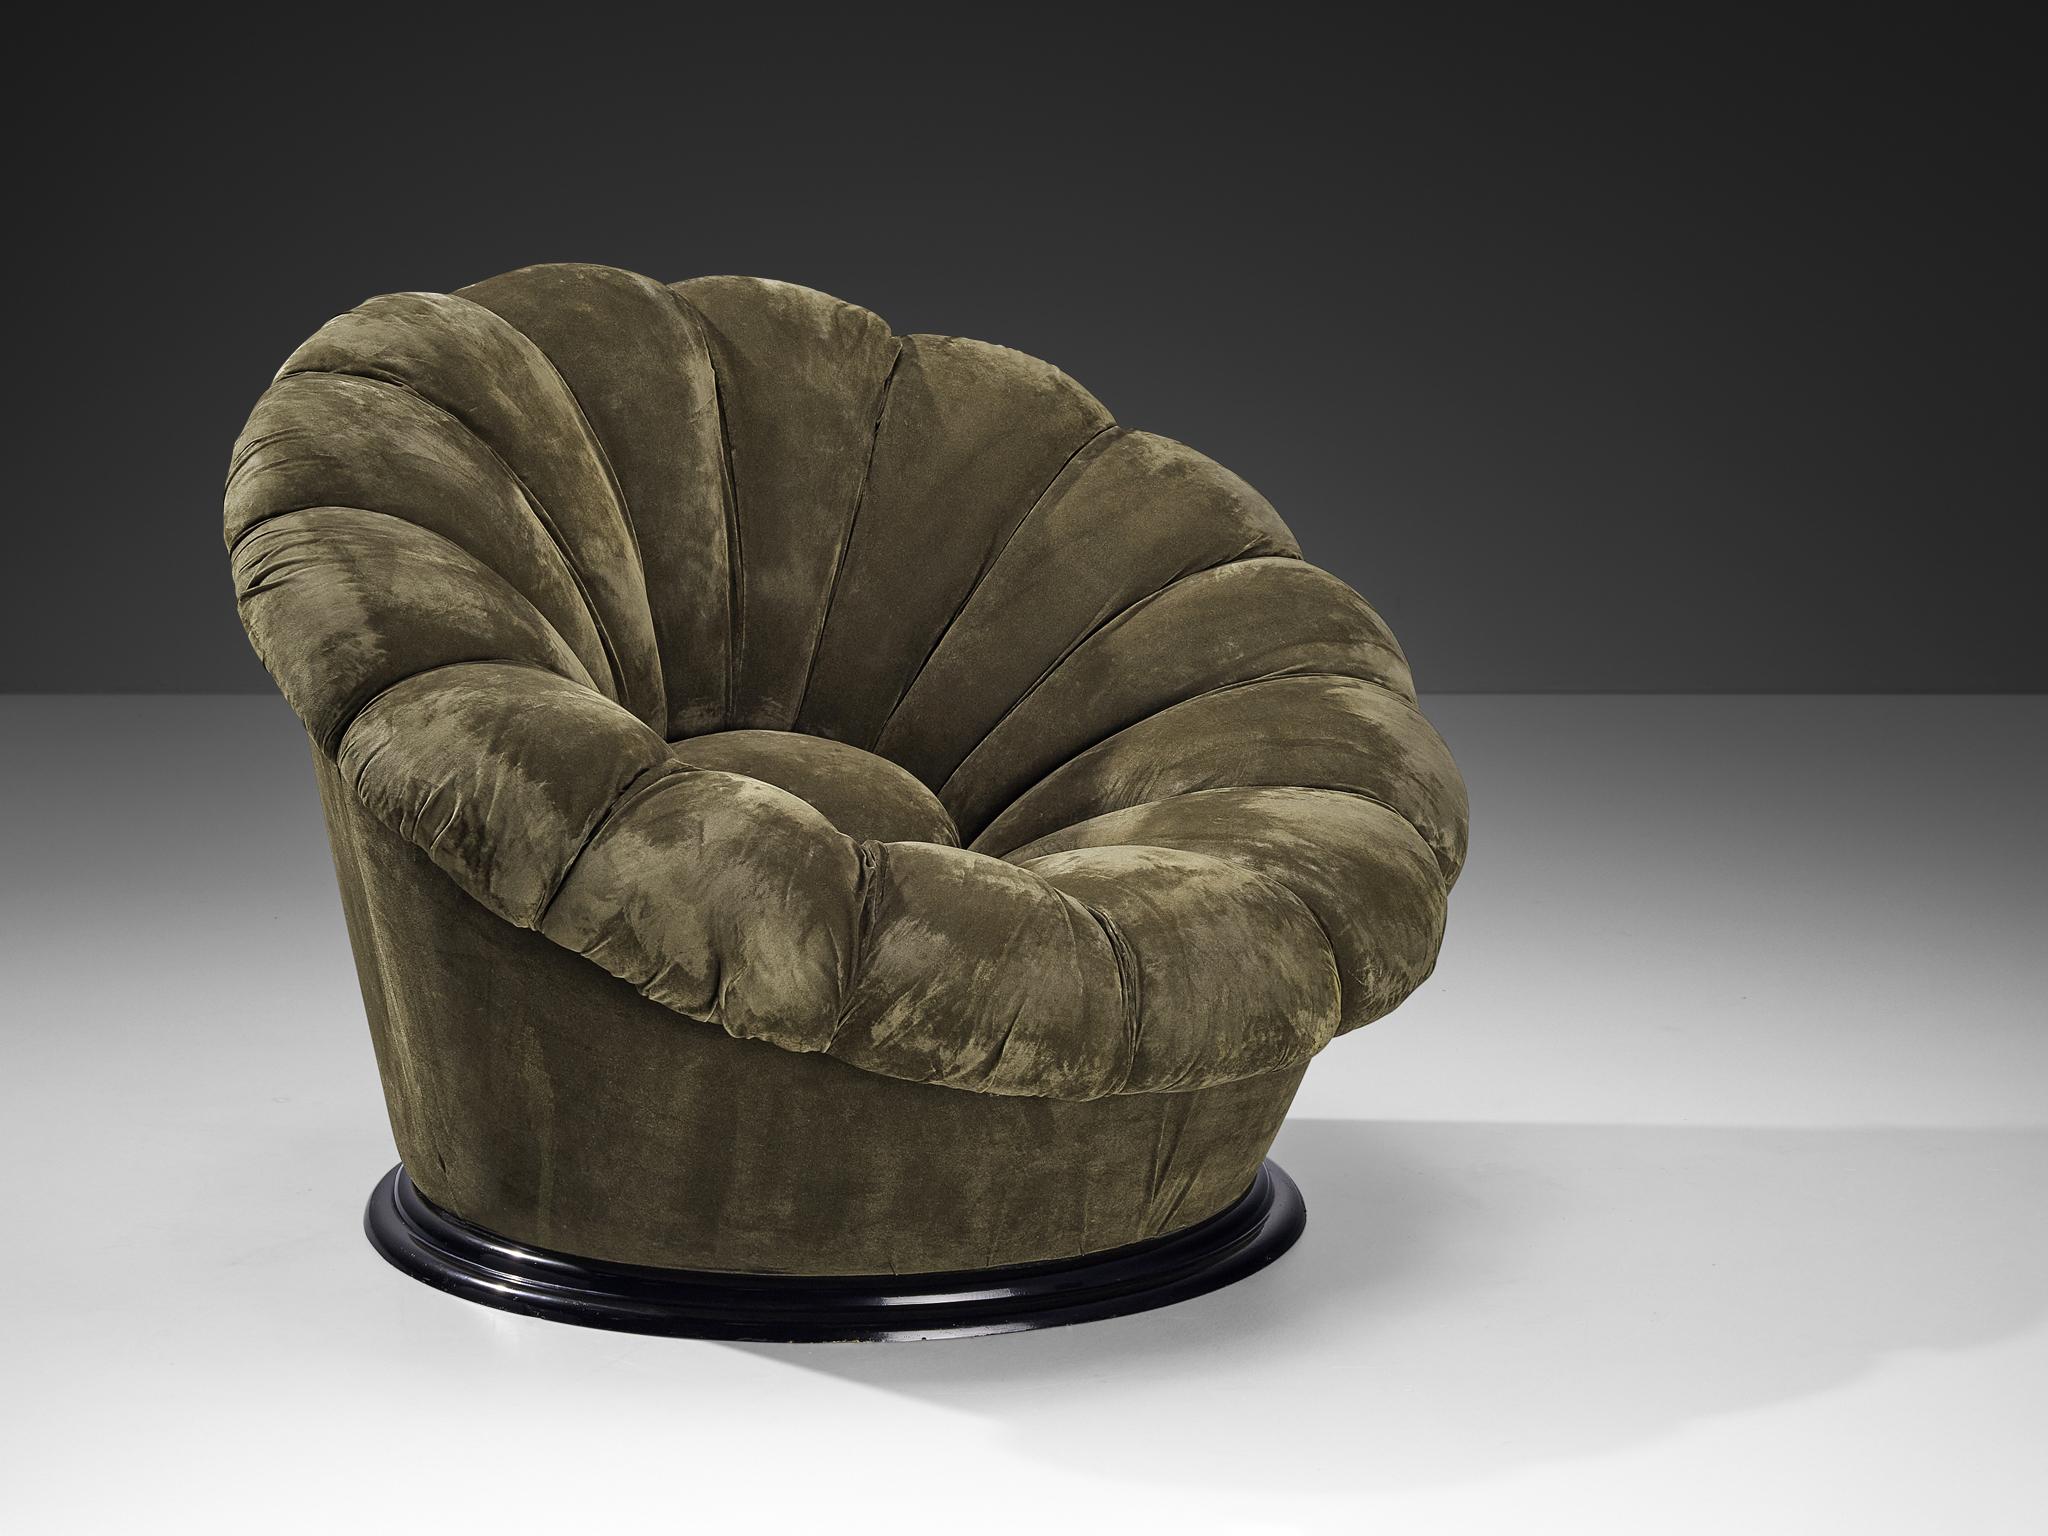 Sessel, Samt, Kunststoff, Italien, 1970er Jahre

Exzentrischer Loungesessel italienischer Herkunft. Das Design erinnert an die Anatomie der Blume mit seinen nach innen gerichteten, büschelartigen Linien und der gefüllten runden Mitte. Die gesamte